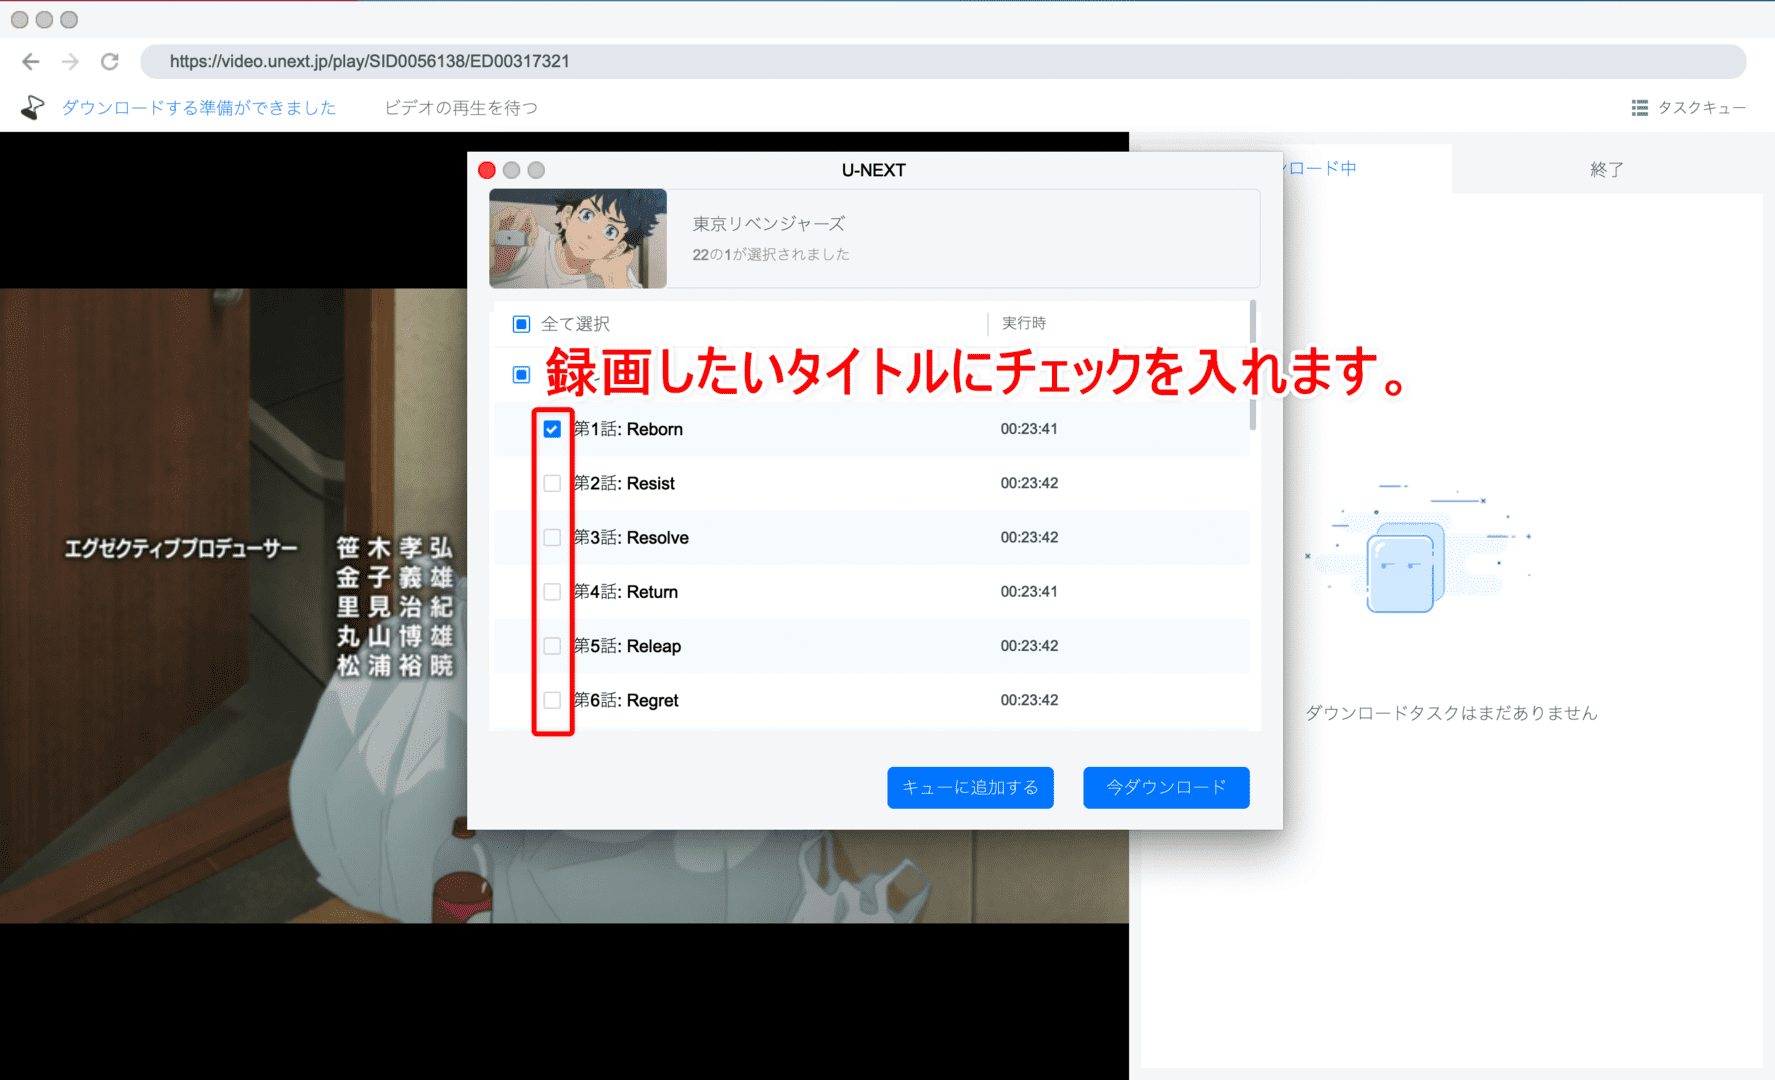 【Mac版U-NEXT録画方法】U-NEXT動画を録画ダウンロードしてMacに保存!!真っ黒にならないユーネクスト画面録画方法｜録画した動画はスマホで視聴可能｜｜録画方法：すると自動的に録画する動画コンテンツを選択できる画面が表示されるので、録画したいコンテンツを選択しましょう。 選択したのち、今すぐダウンロードしたい場合は「今ダウンロード」、他の動画作品も選択してまとめてダウンロードしたい場合は「キューに追加する」をクリックします。